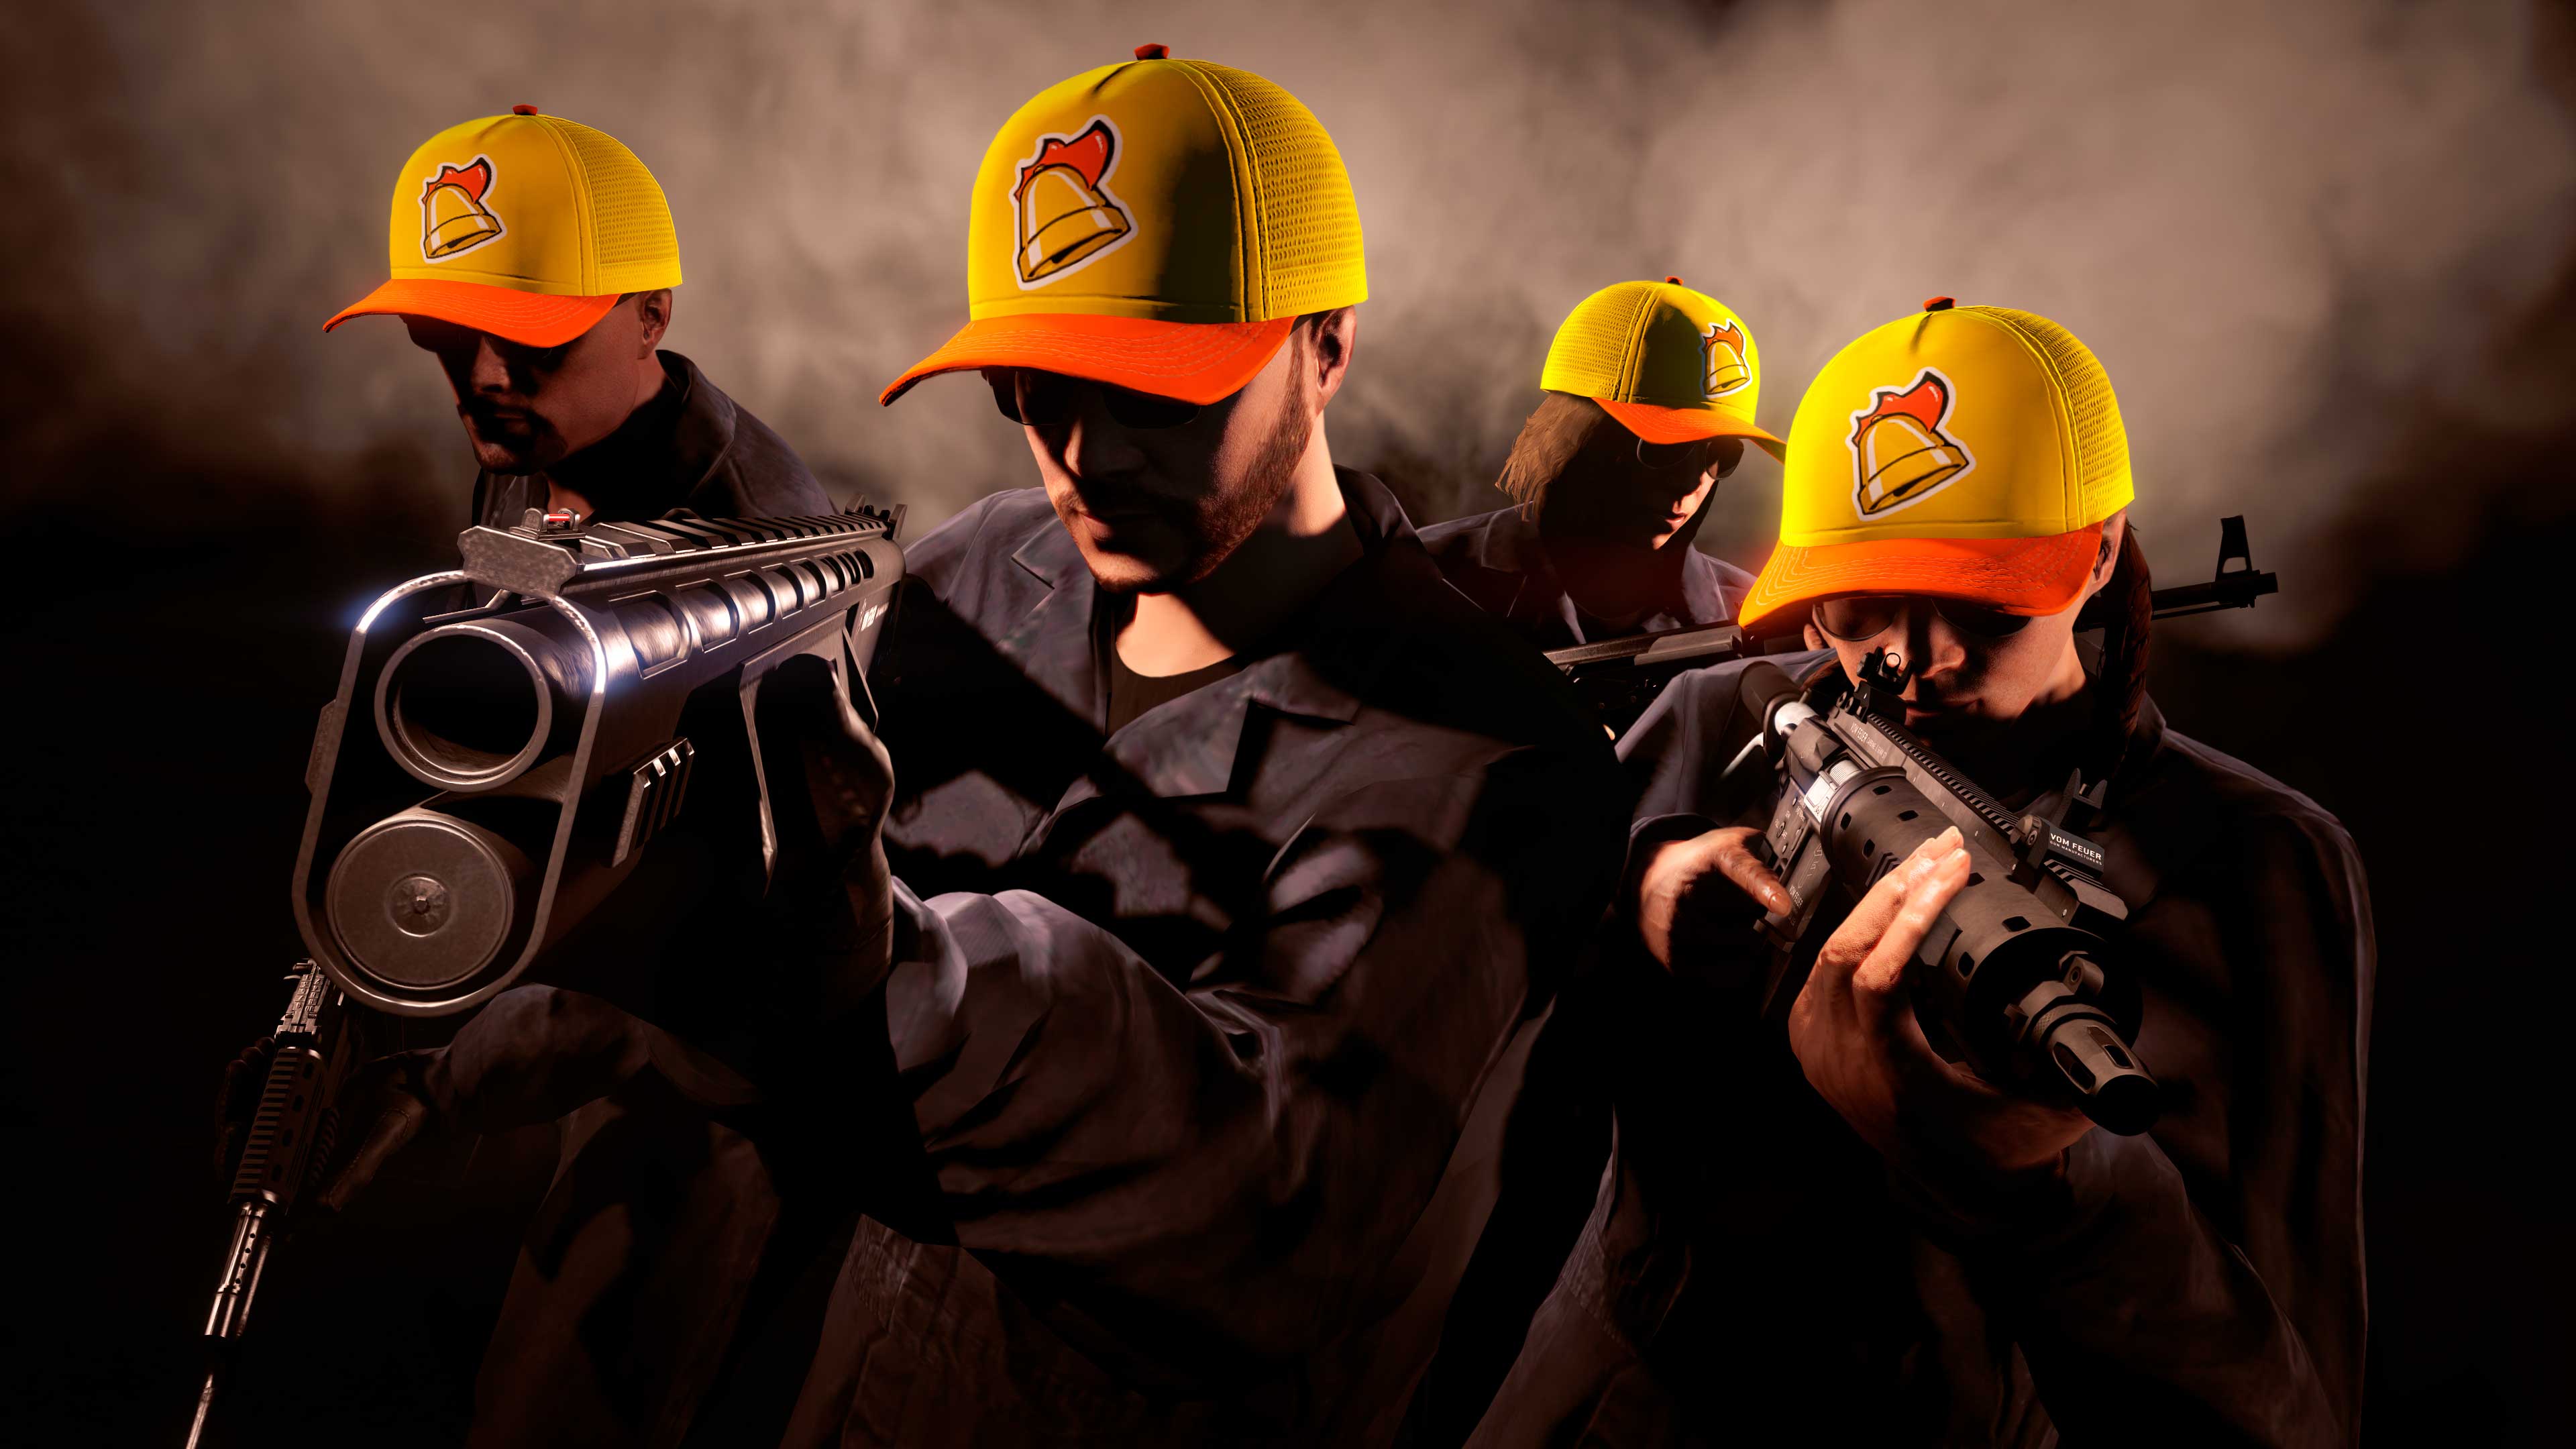 Quatro jogadores armados em GTA Online usando os bonés com a marca do Cluckin’ Bell.